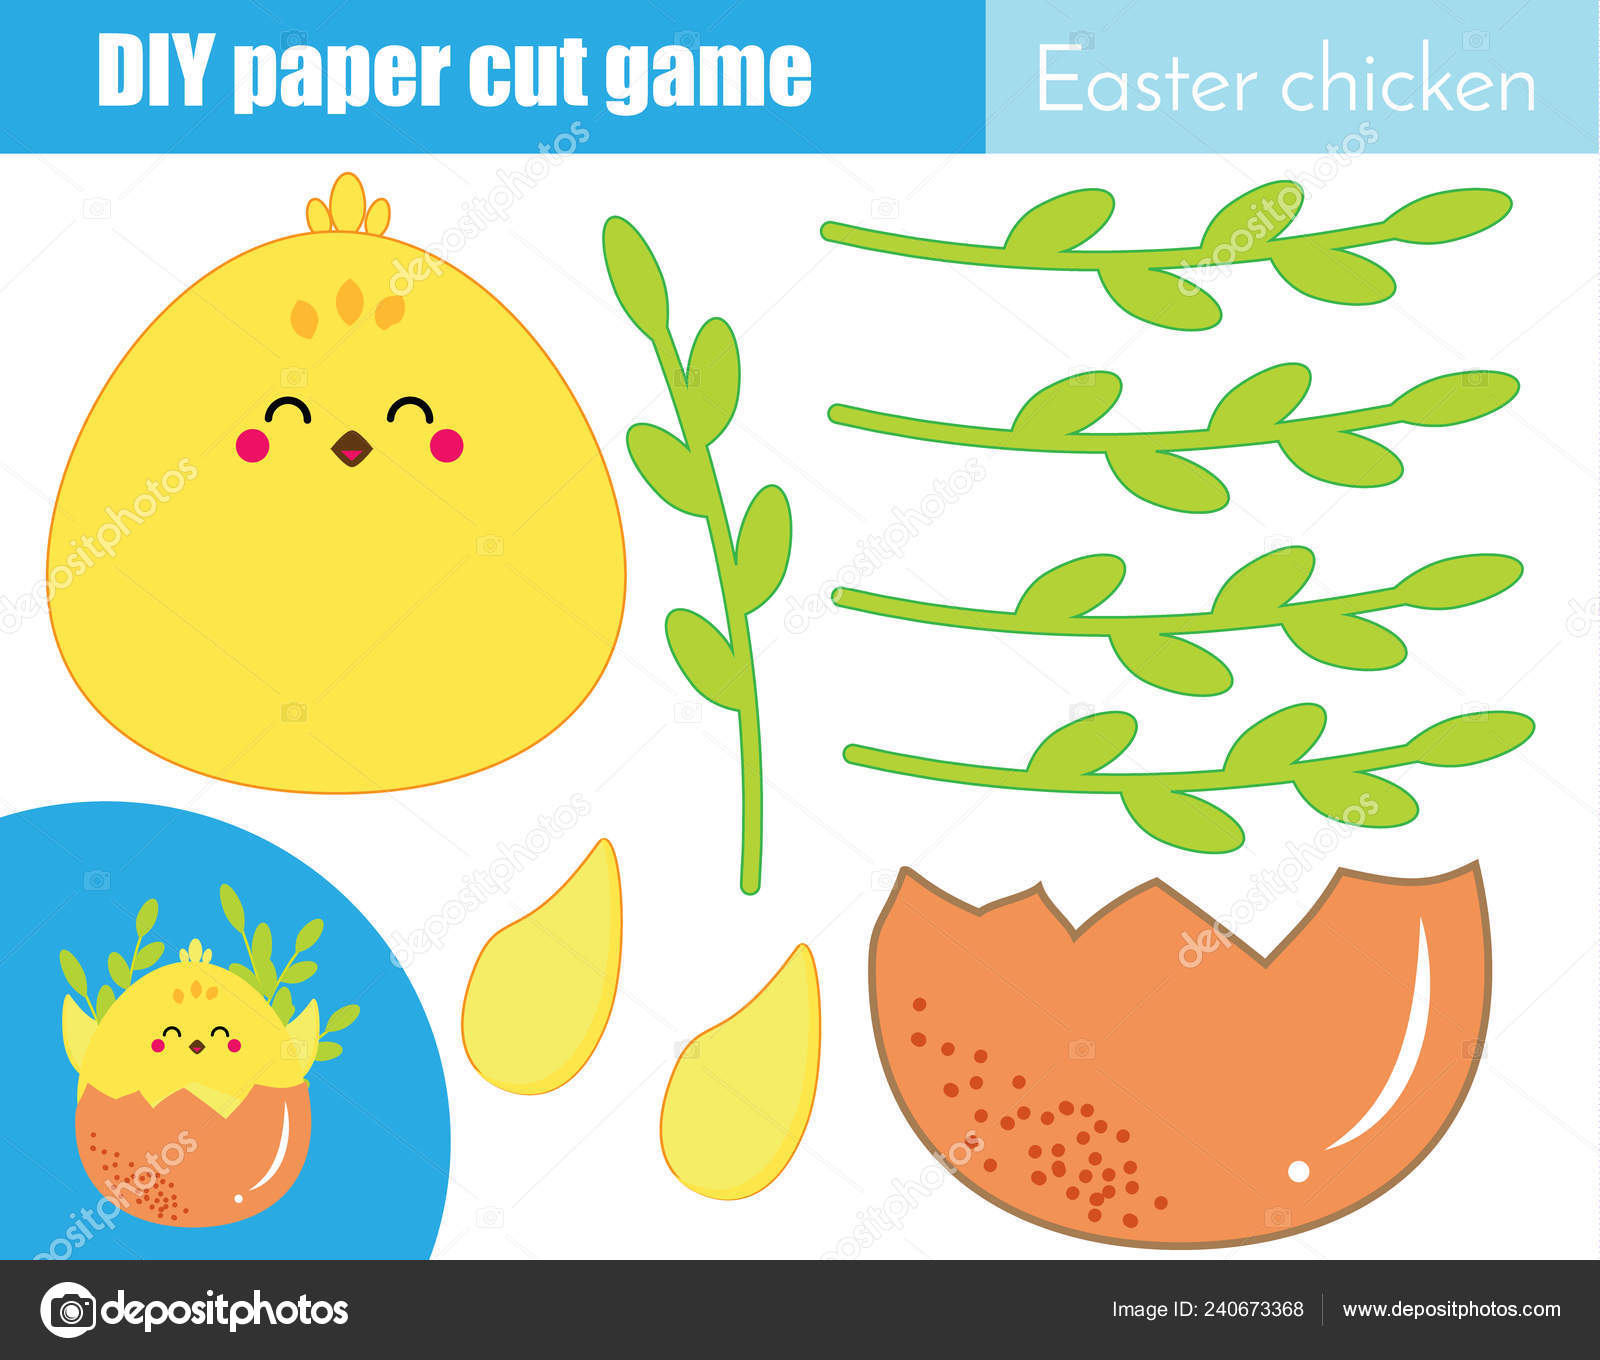 Jogo de papel educativo para crianças ovo de páscoa use tesoura e